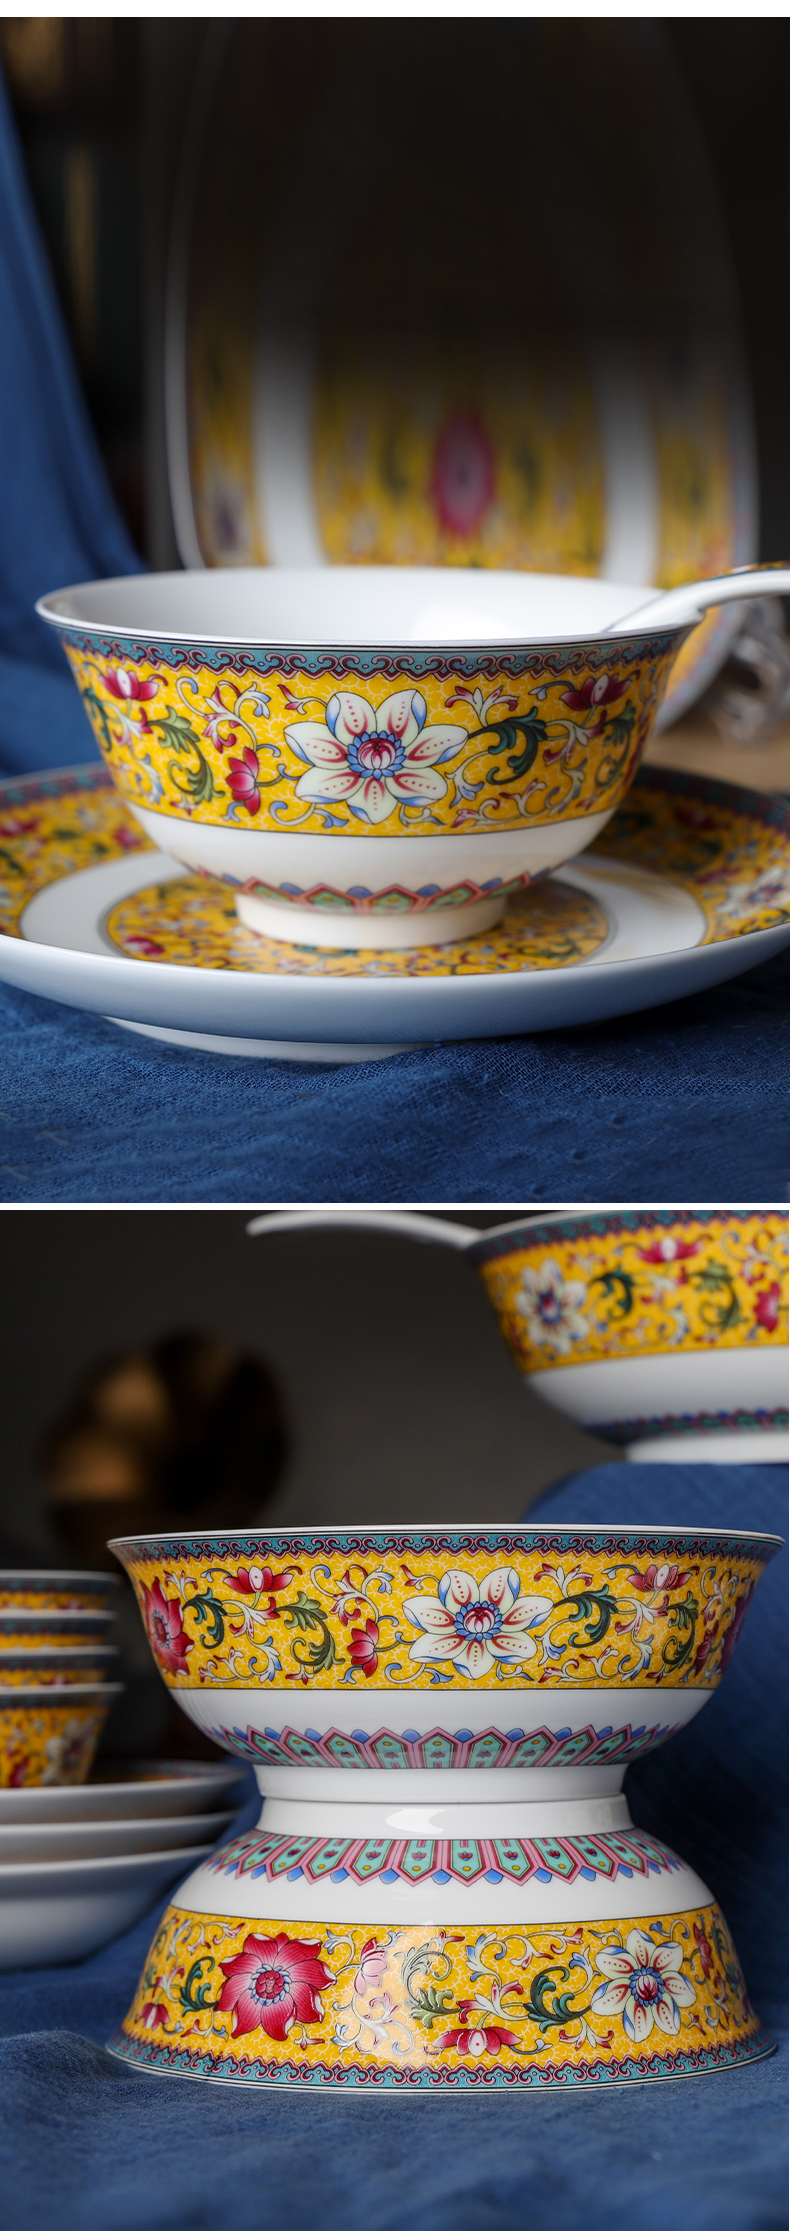 古镇陶瓷 碗单个 陶瓷简约创意个性碗家用吃饭景德镇陶瓷盘碗套装